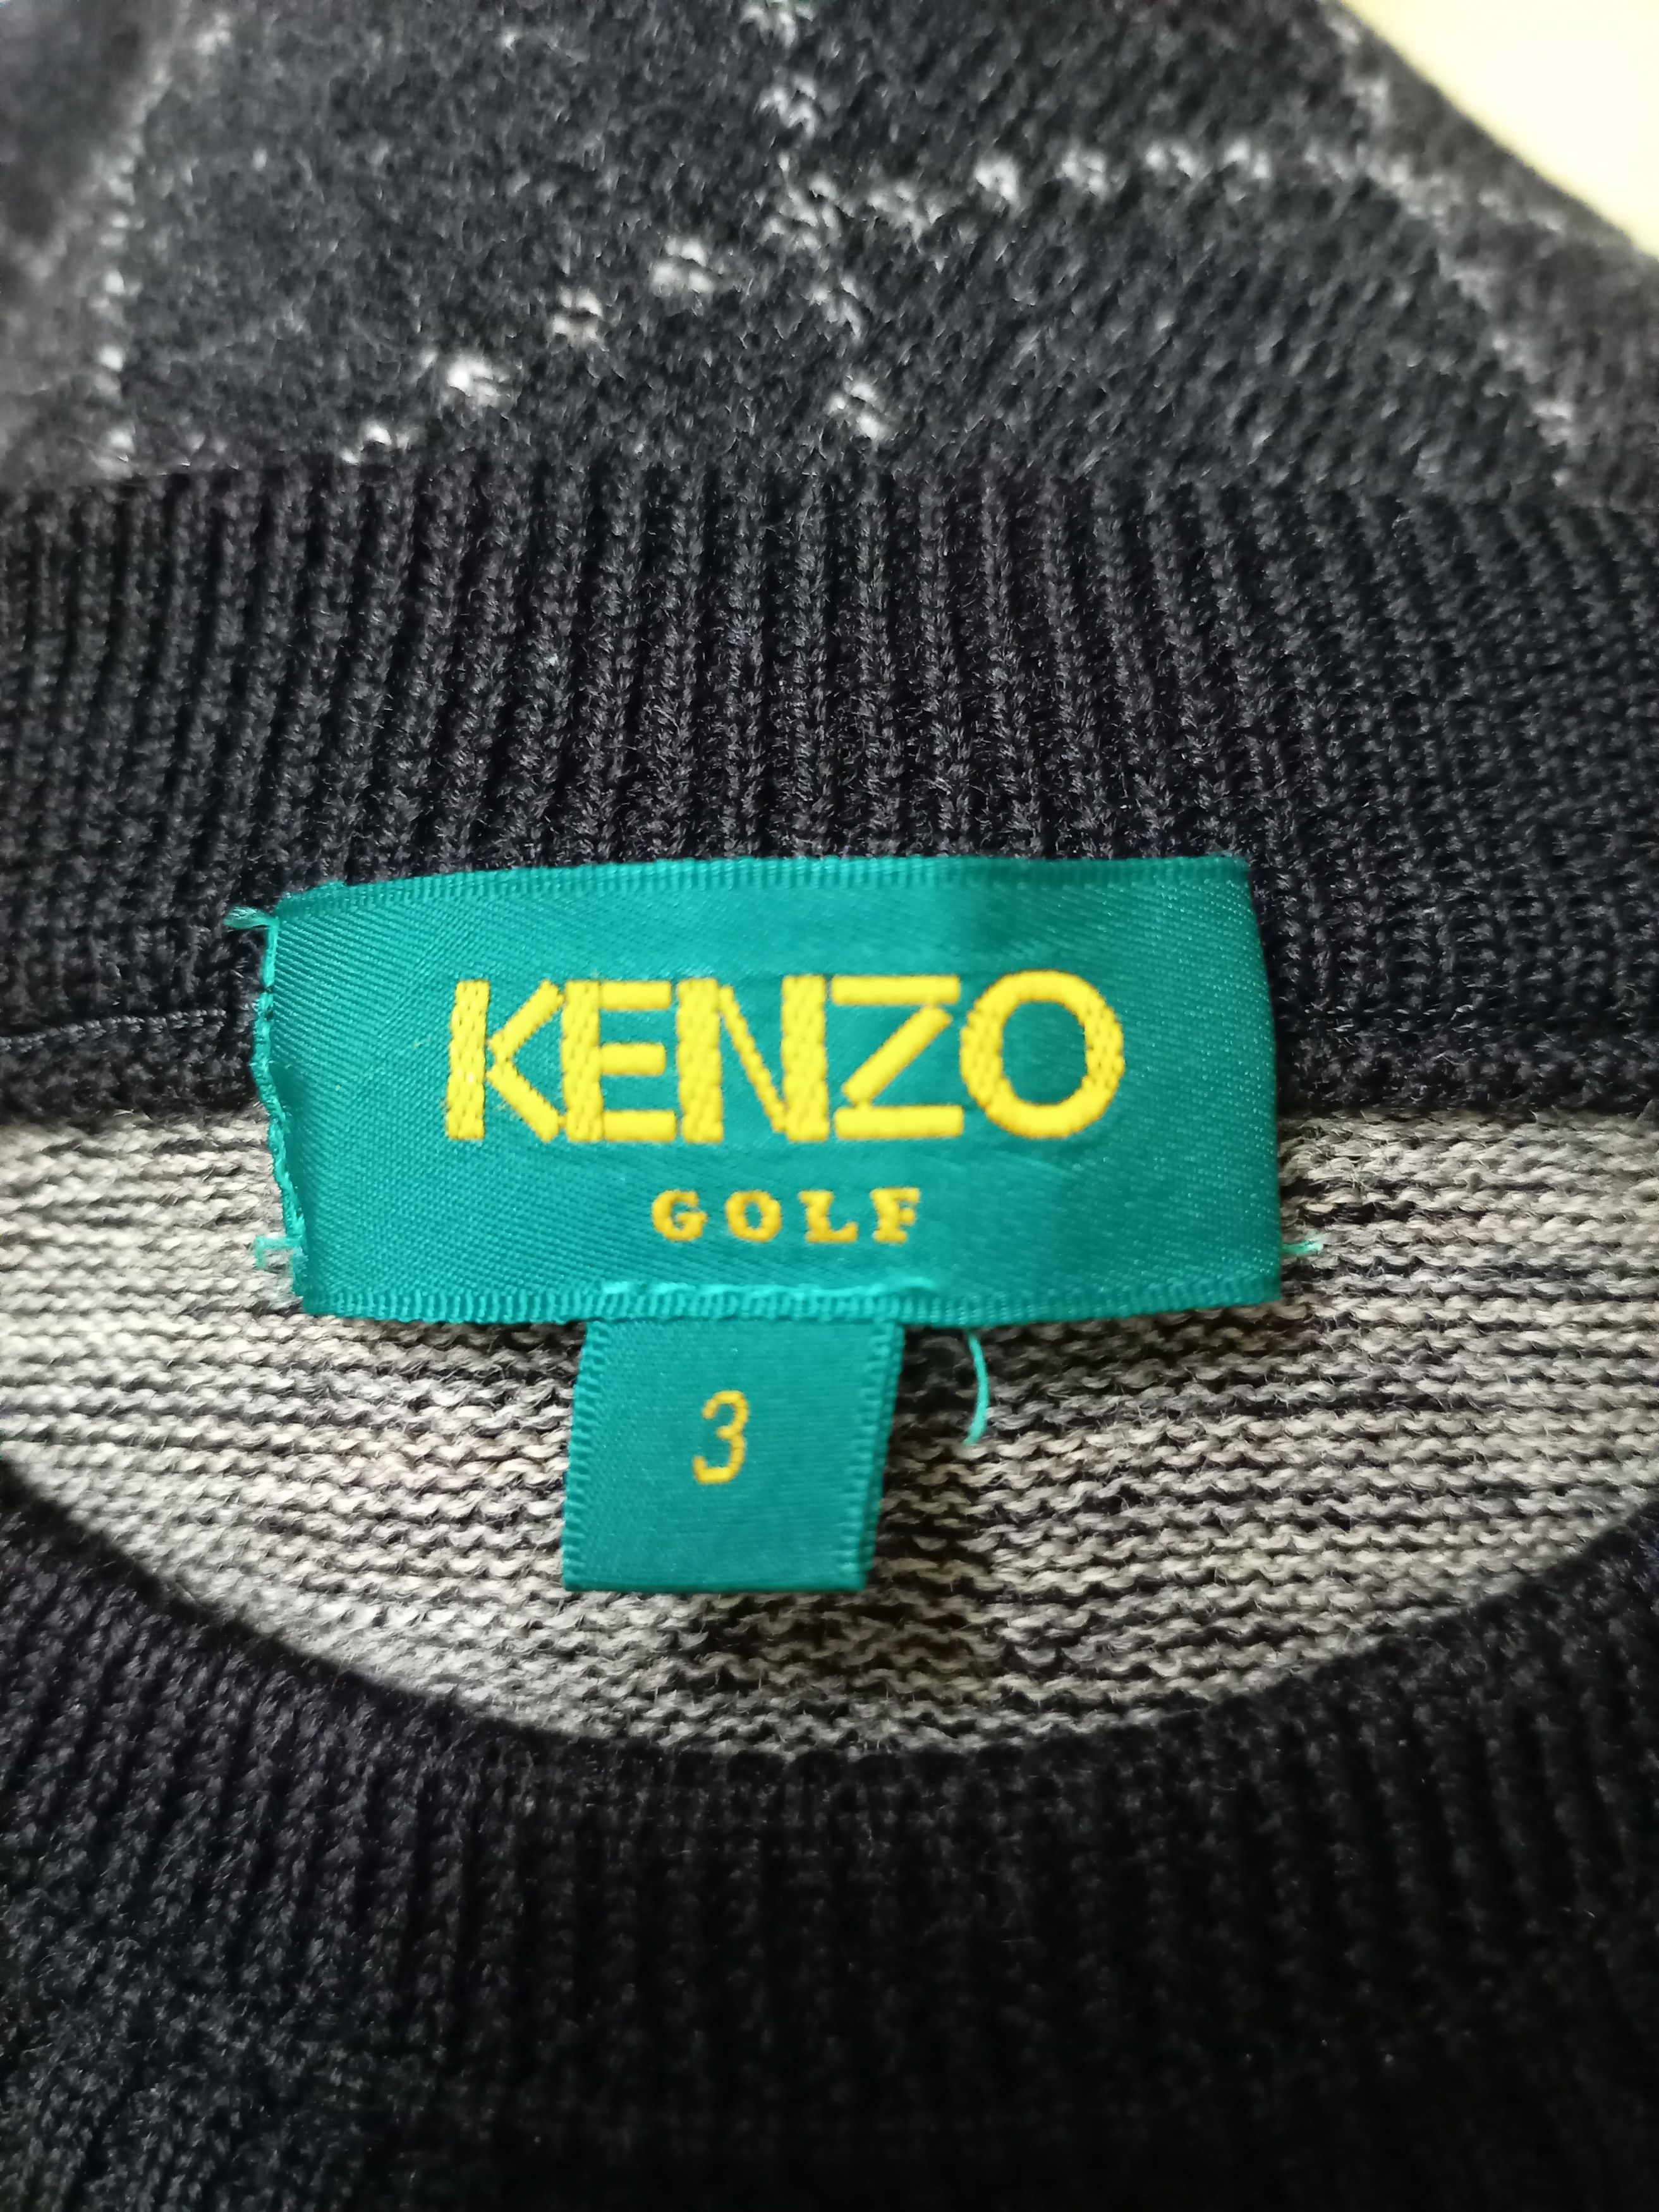 KENZO GOLF KNITWEAR - 6